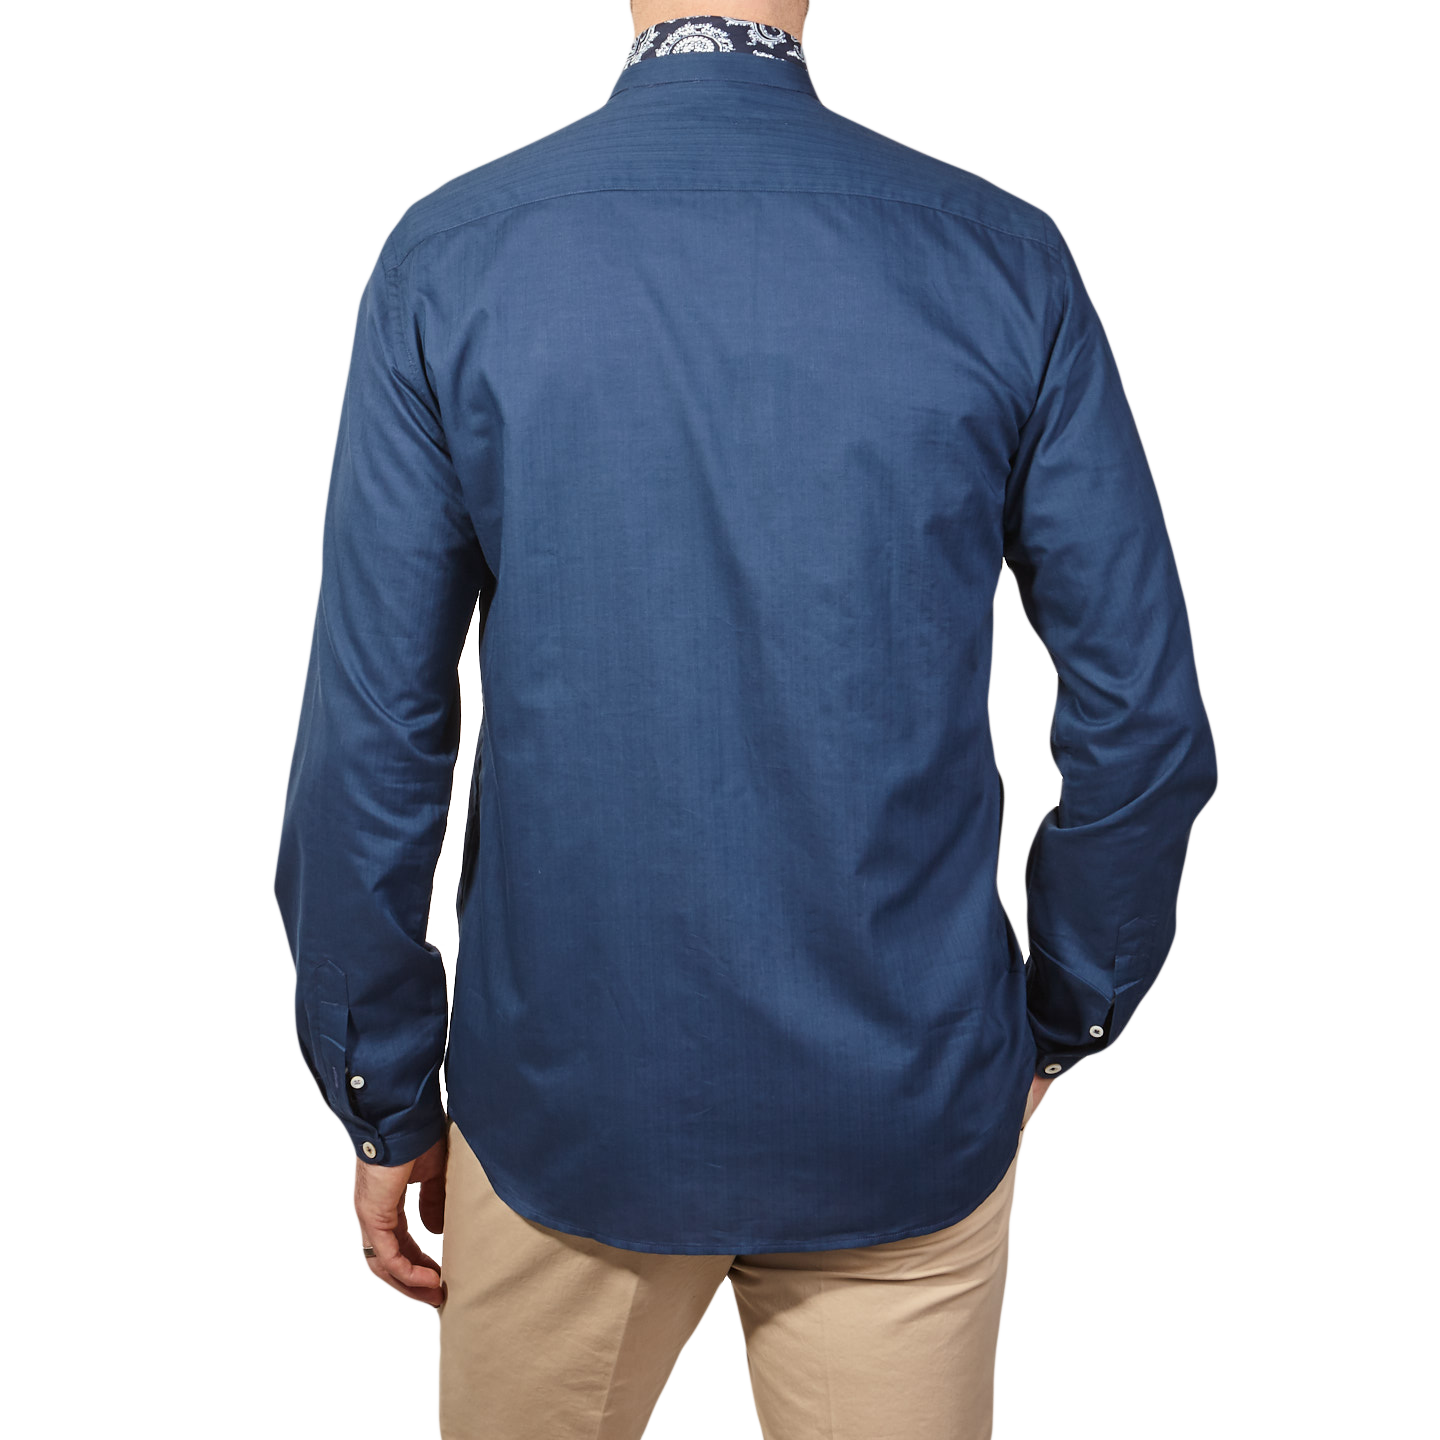 Canali - Indigo Blue Grandad Shirt | Baltzar